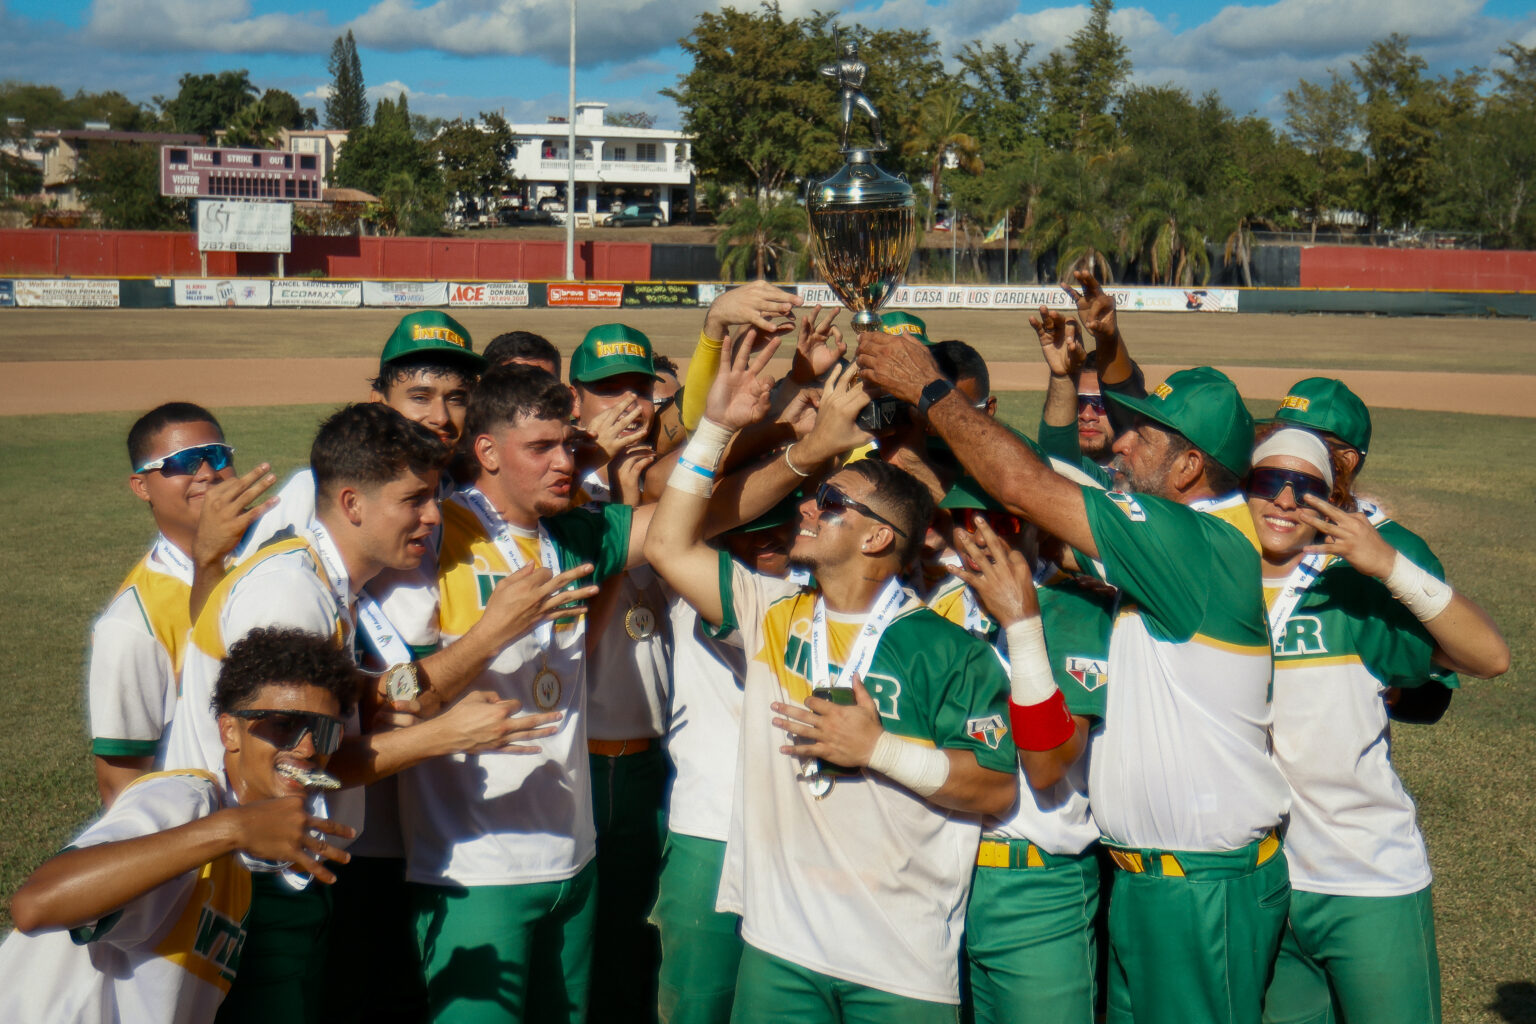 los tigres de la uipr alzan su trofeo de campeones por tercer año consecutivo del béisbol de la lai.jpg (edgardo medina para la lai)